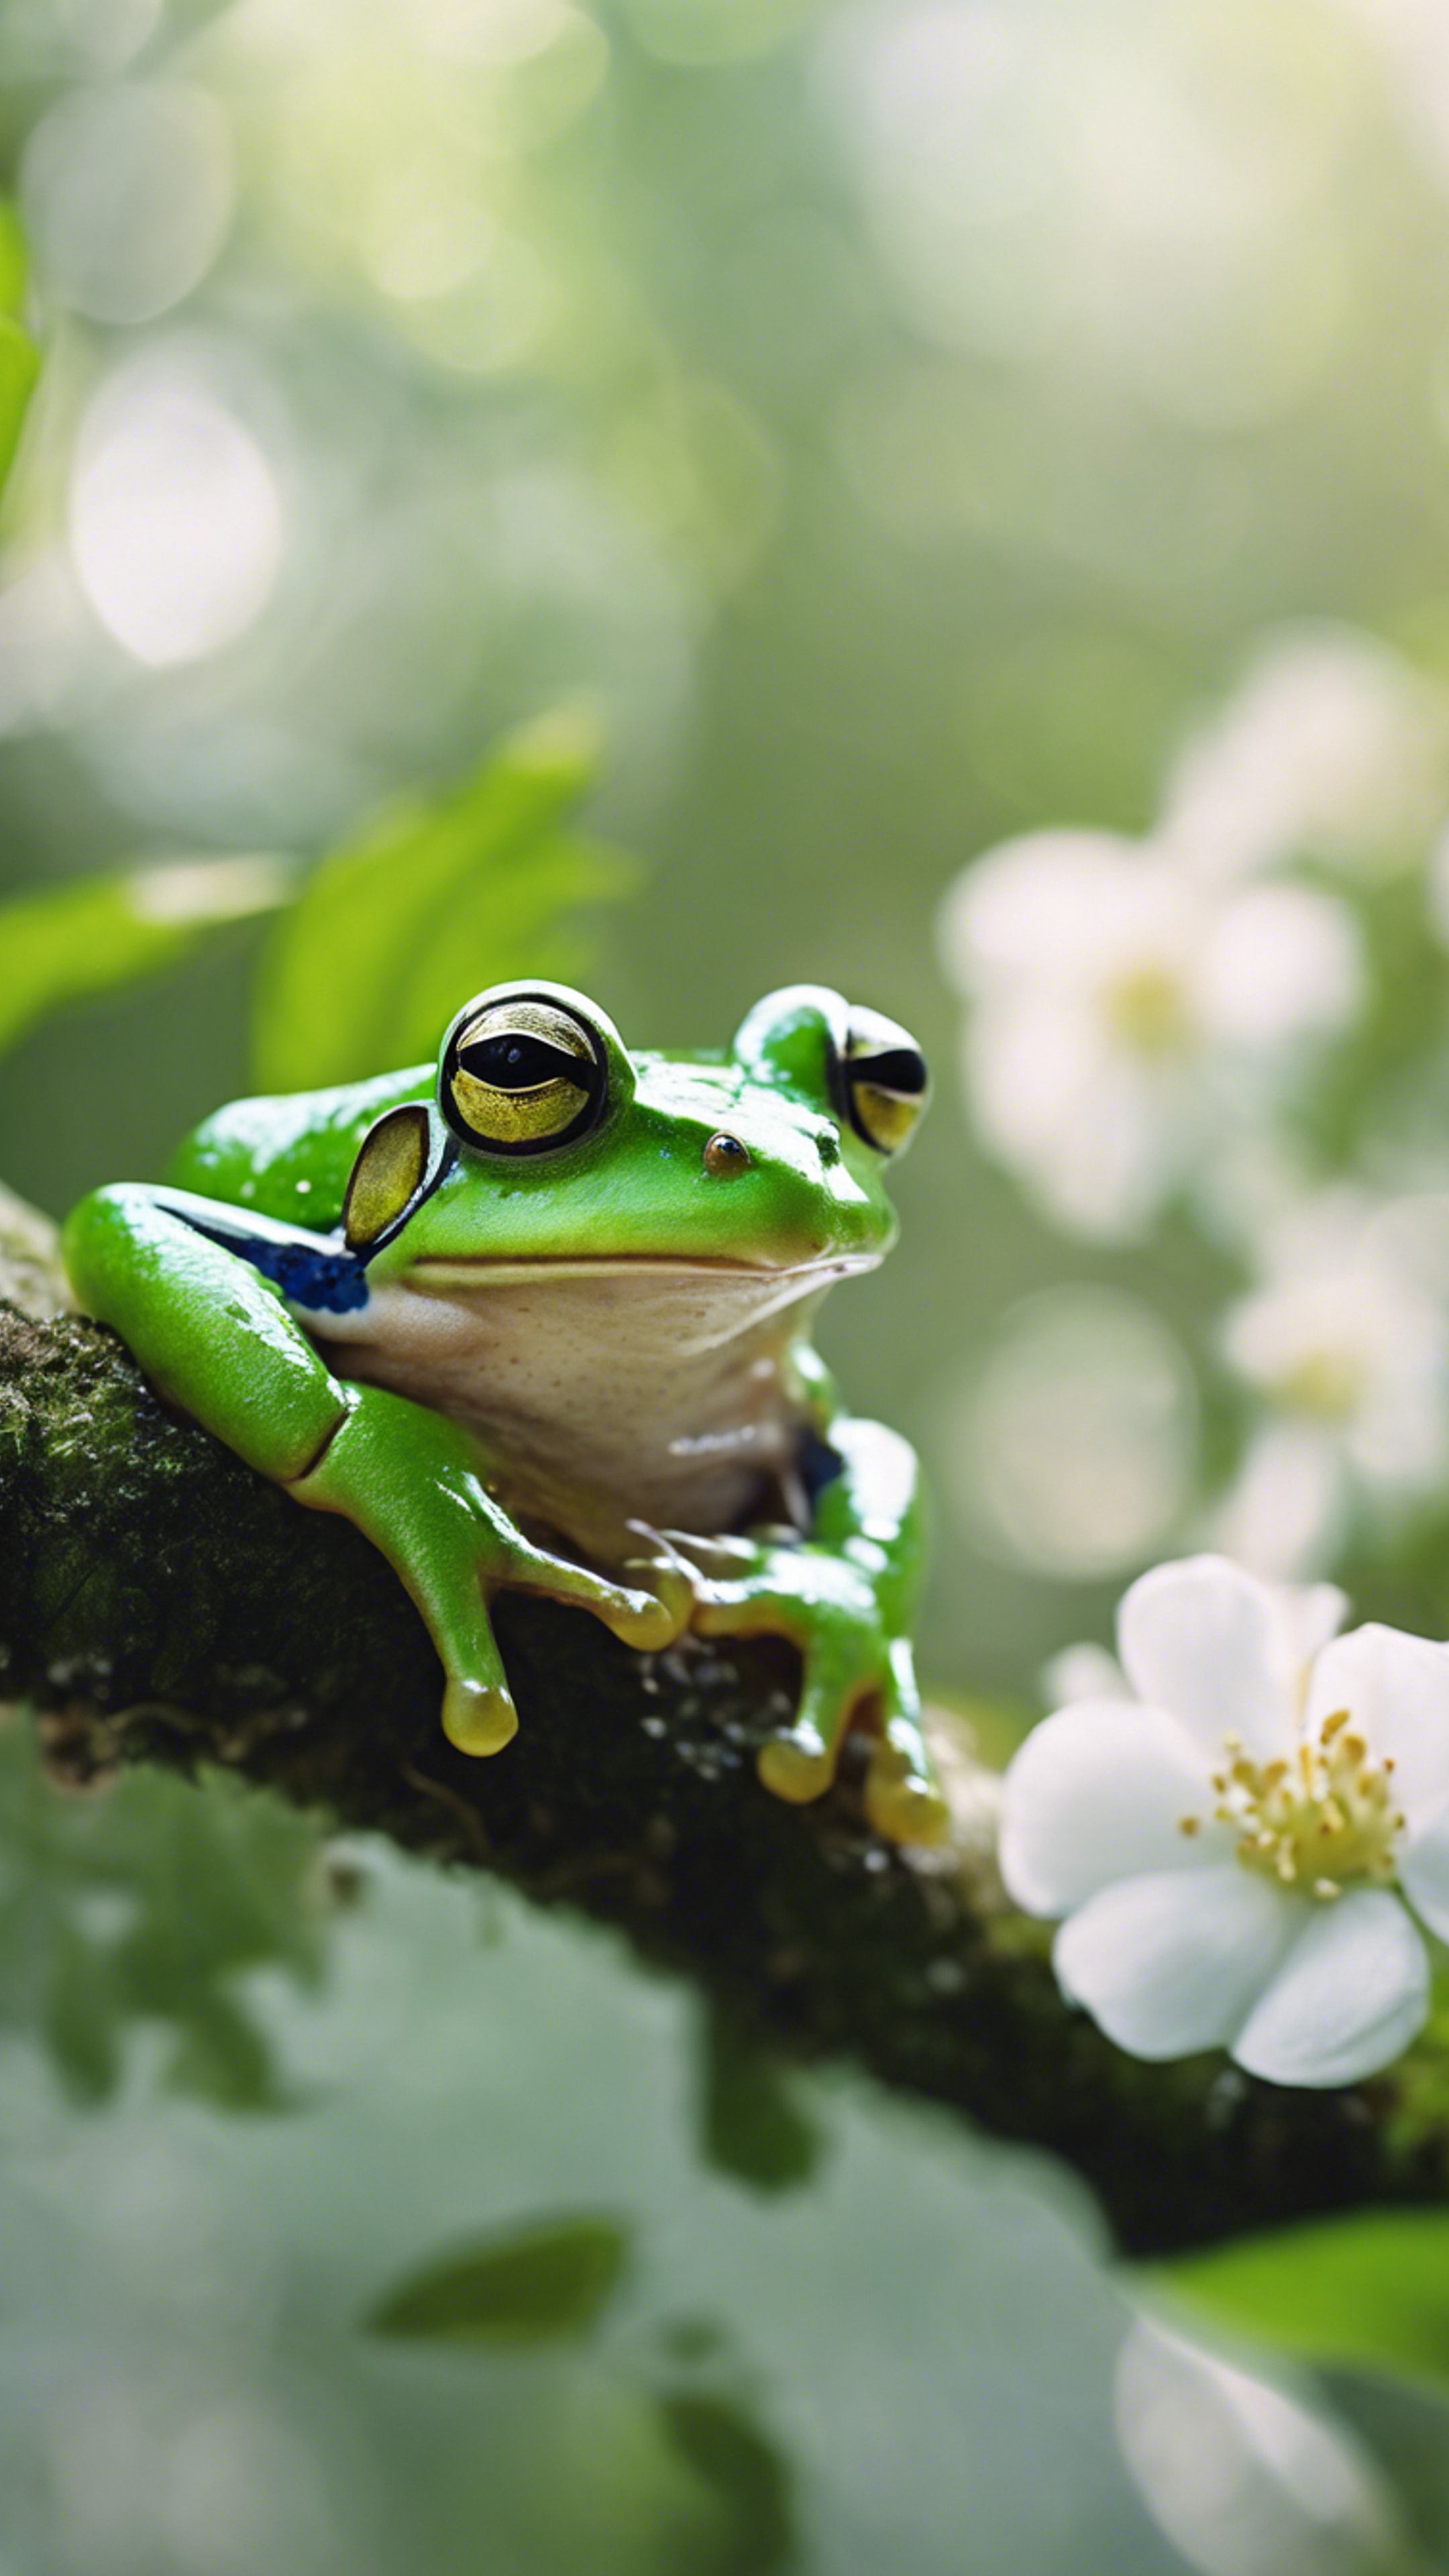 A bright green frog on a white blossom in the rainforest Sfondo[dcf59f9895044df59e99]